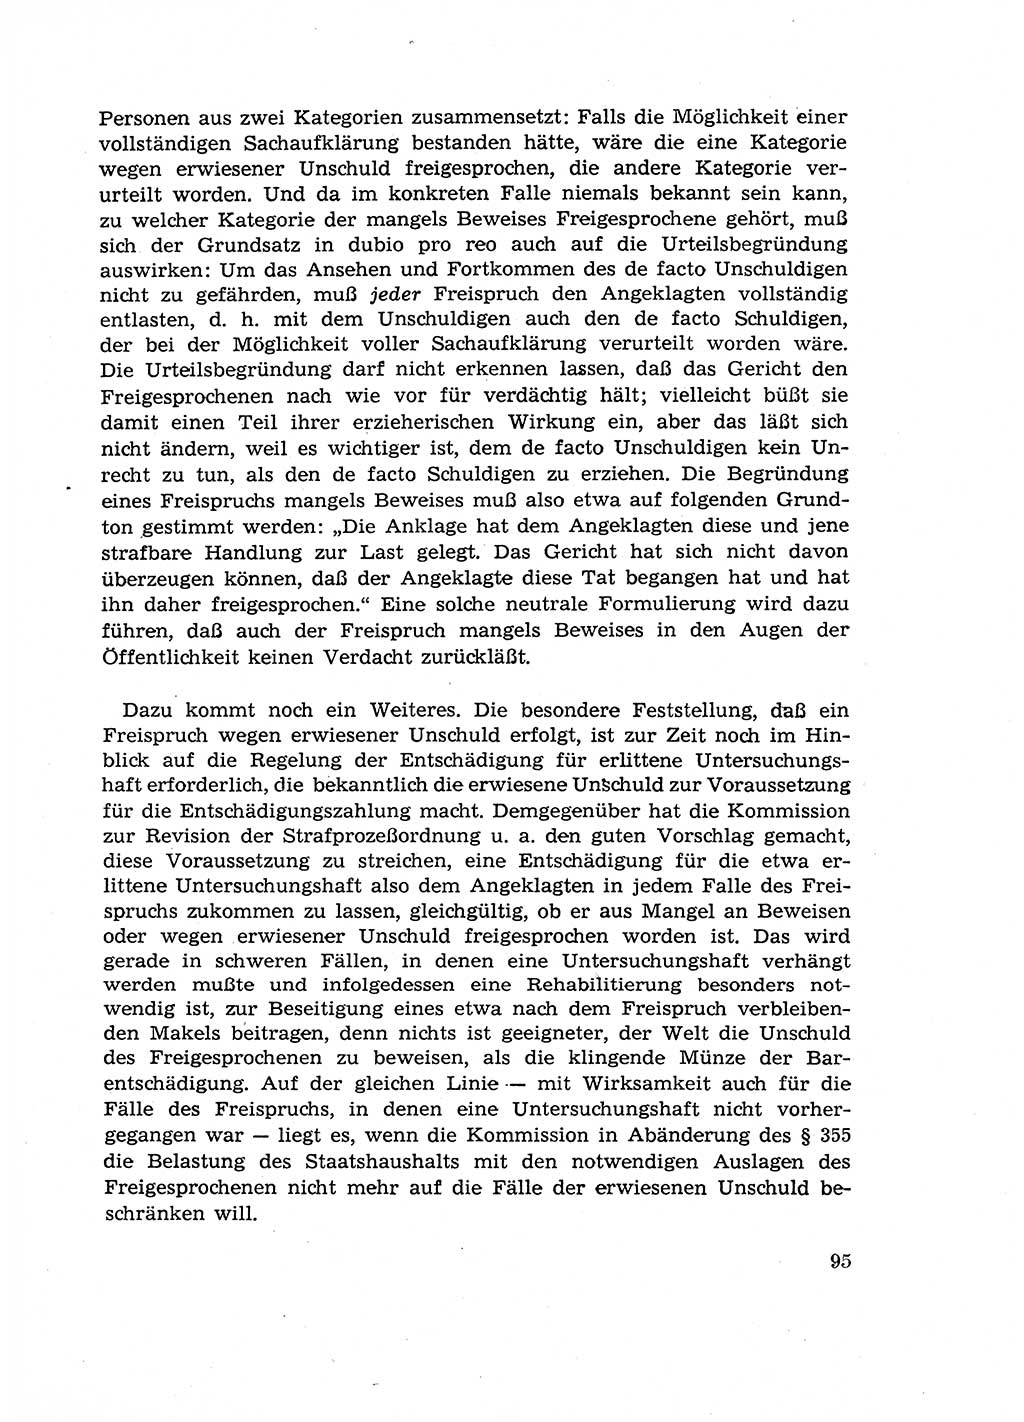 Fragen des Beweisrechts im Strafprozess [Deutsche Demokratische Republik (DDR)] 1956, Seite 95 (Fr. BeweisR. Str.-Proz. DDR 1956, S. 95)